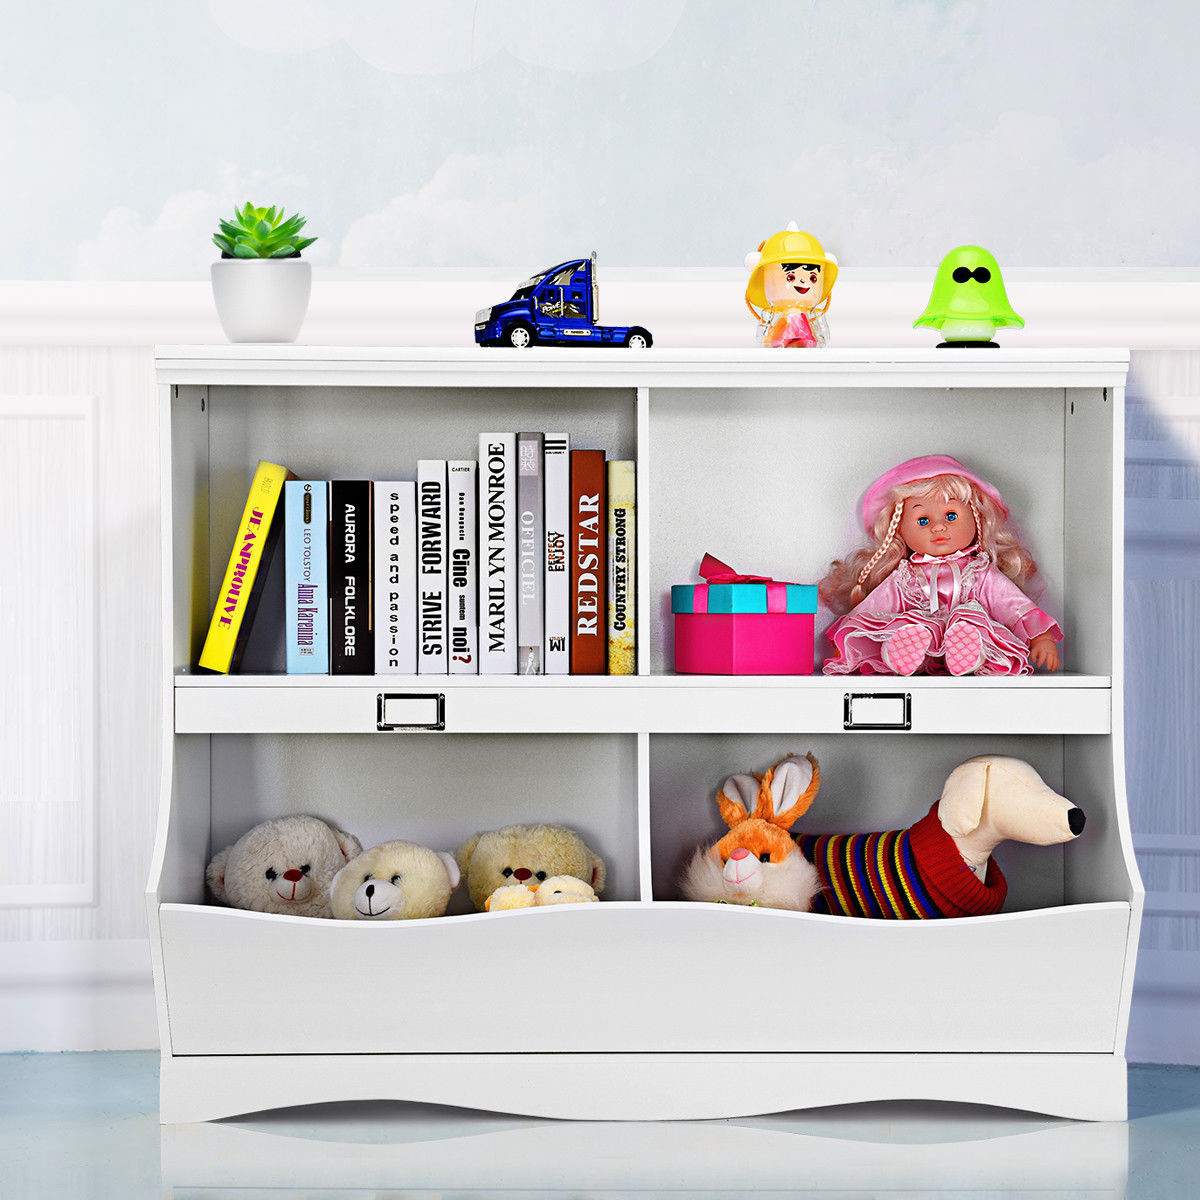 Childrens Bookcases And Storage
 Gymax Children Storage Unit Kids Bookshelf Bookcase Baby